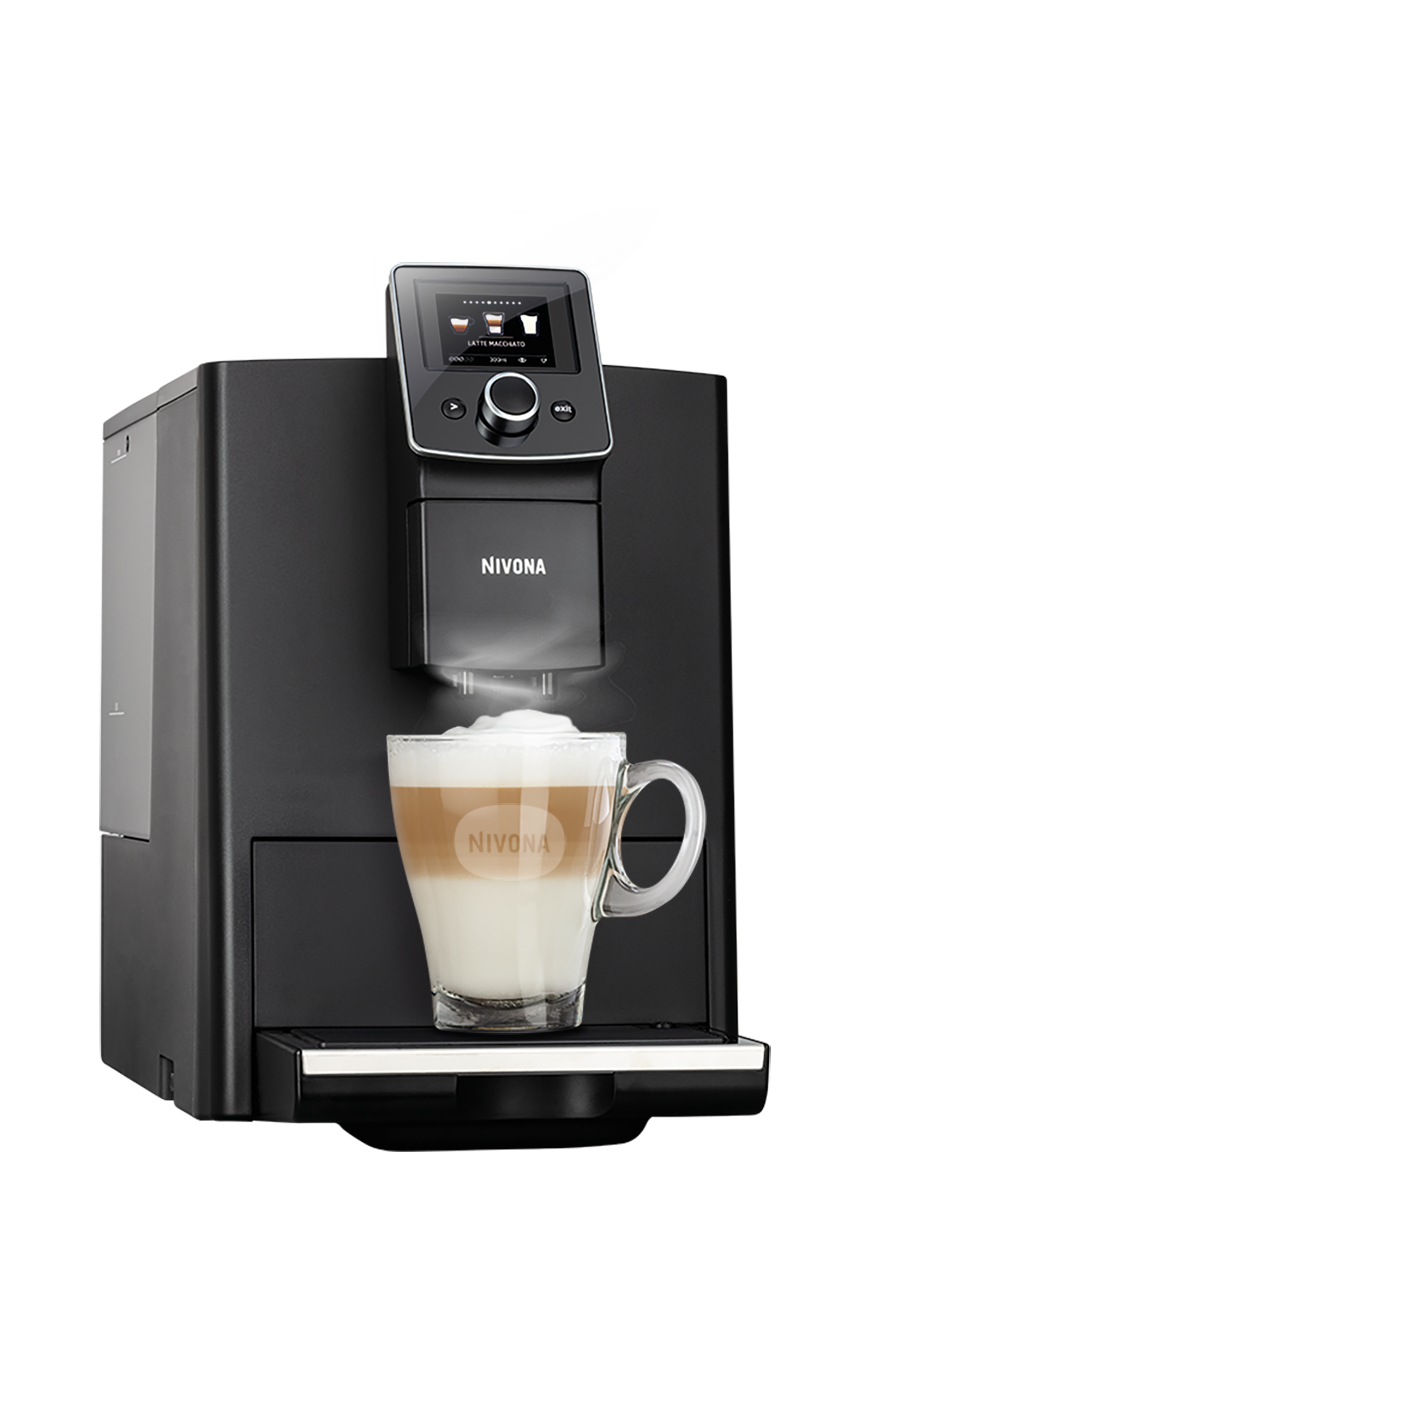 NICR 820 Mattschwarz / Chrom-Kaffeevollautomaten-Nivona-Beutelschmidt